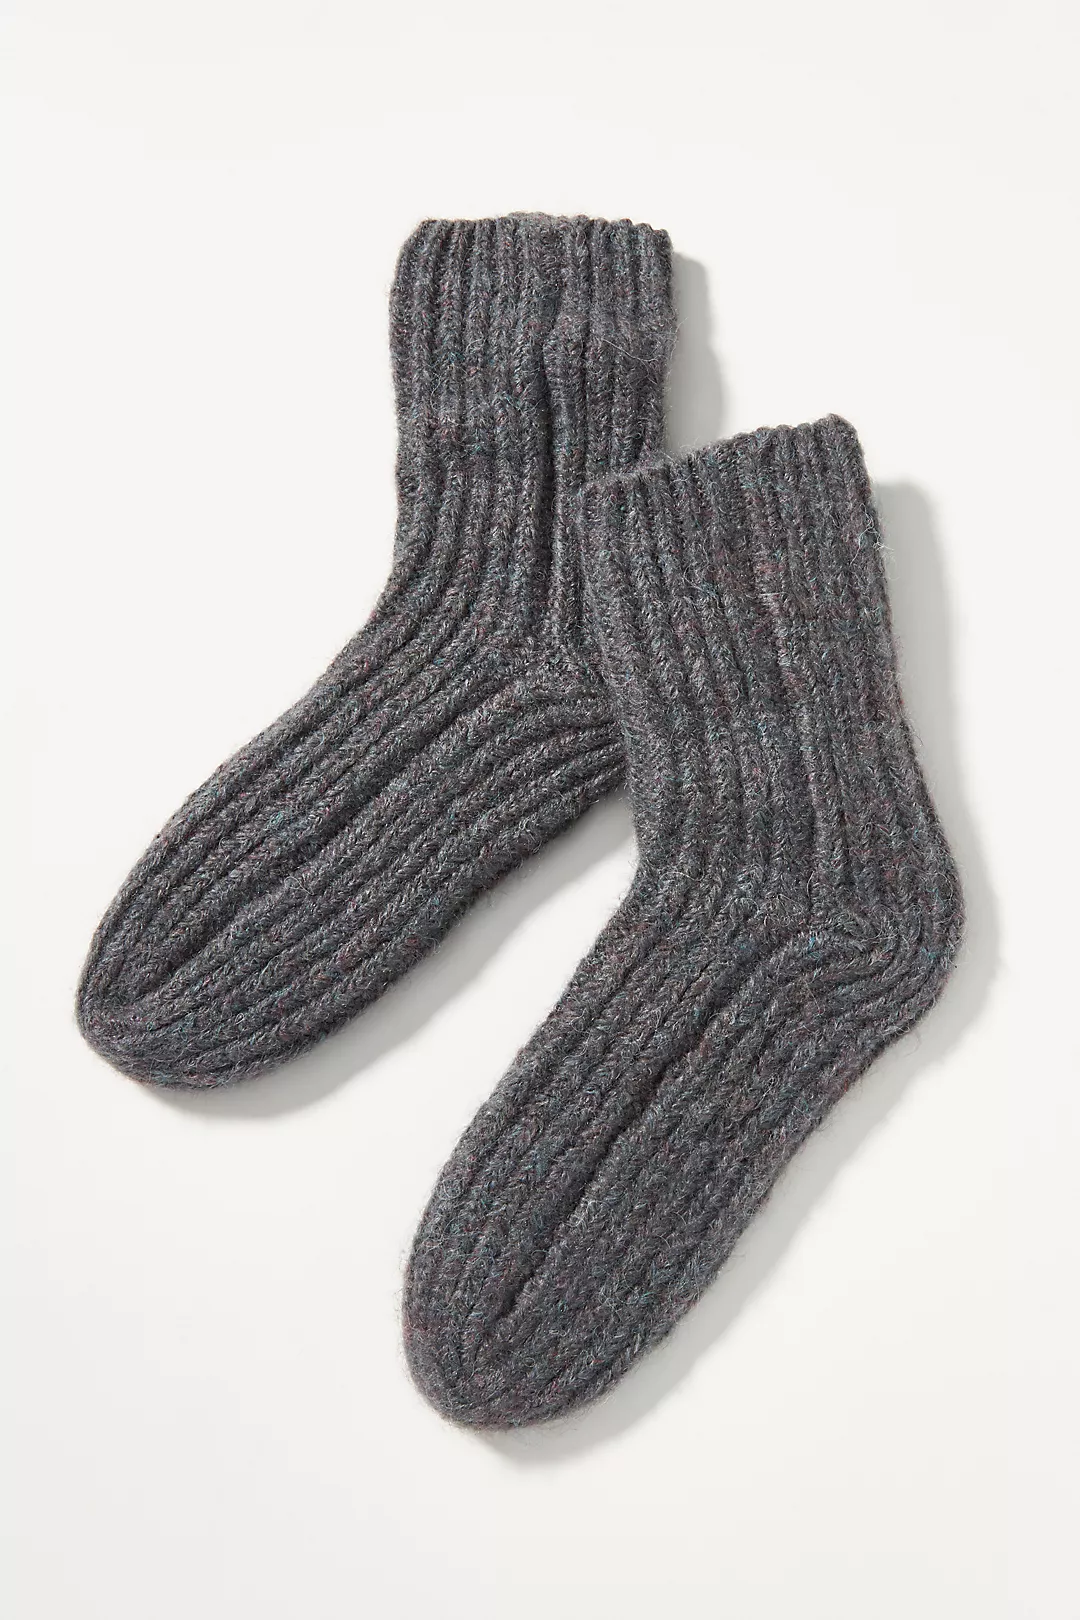 Socks Stocking Stuffers – 2021 – Page 2